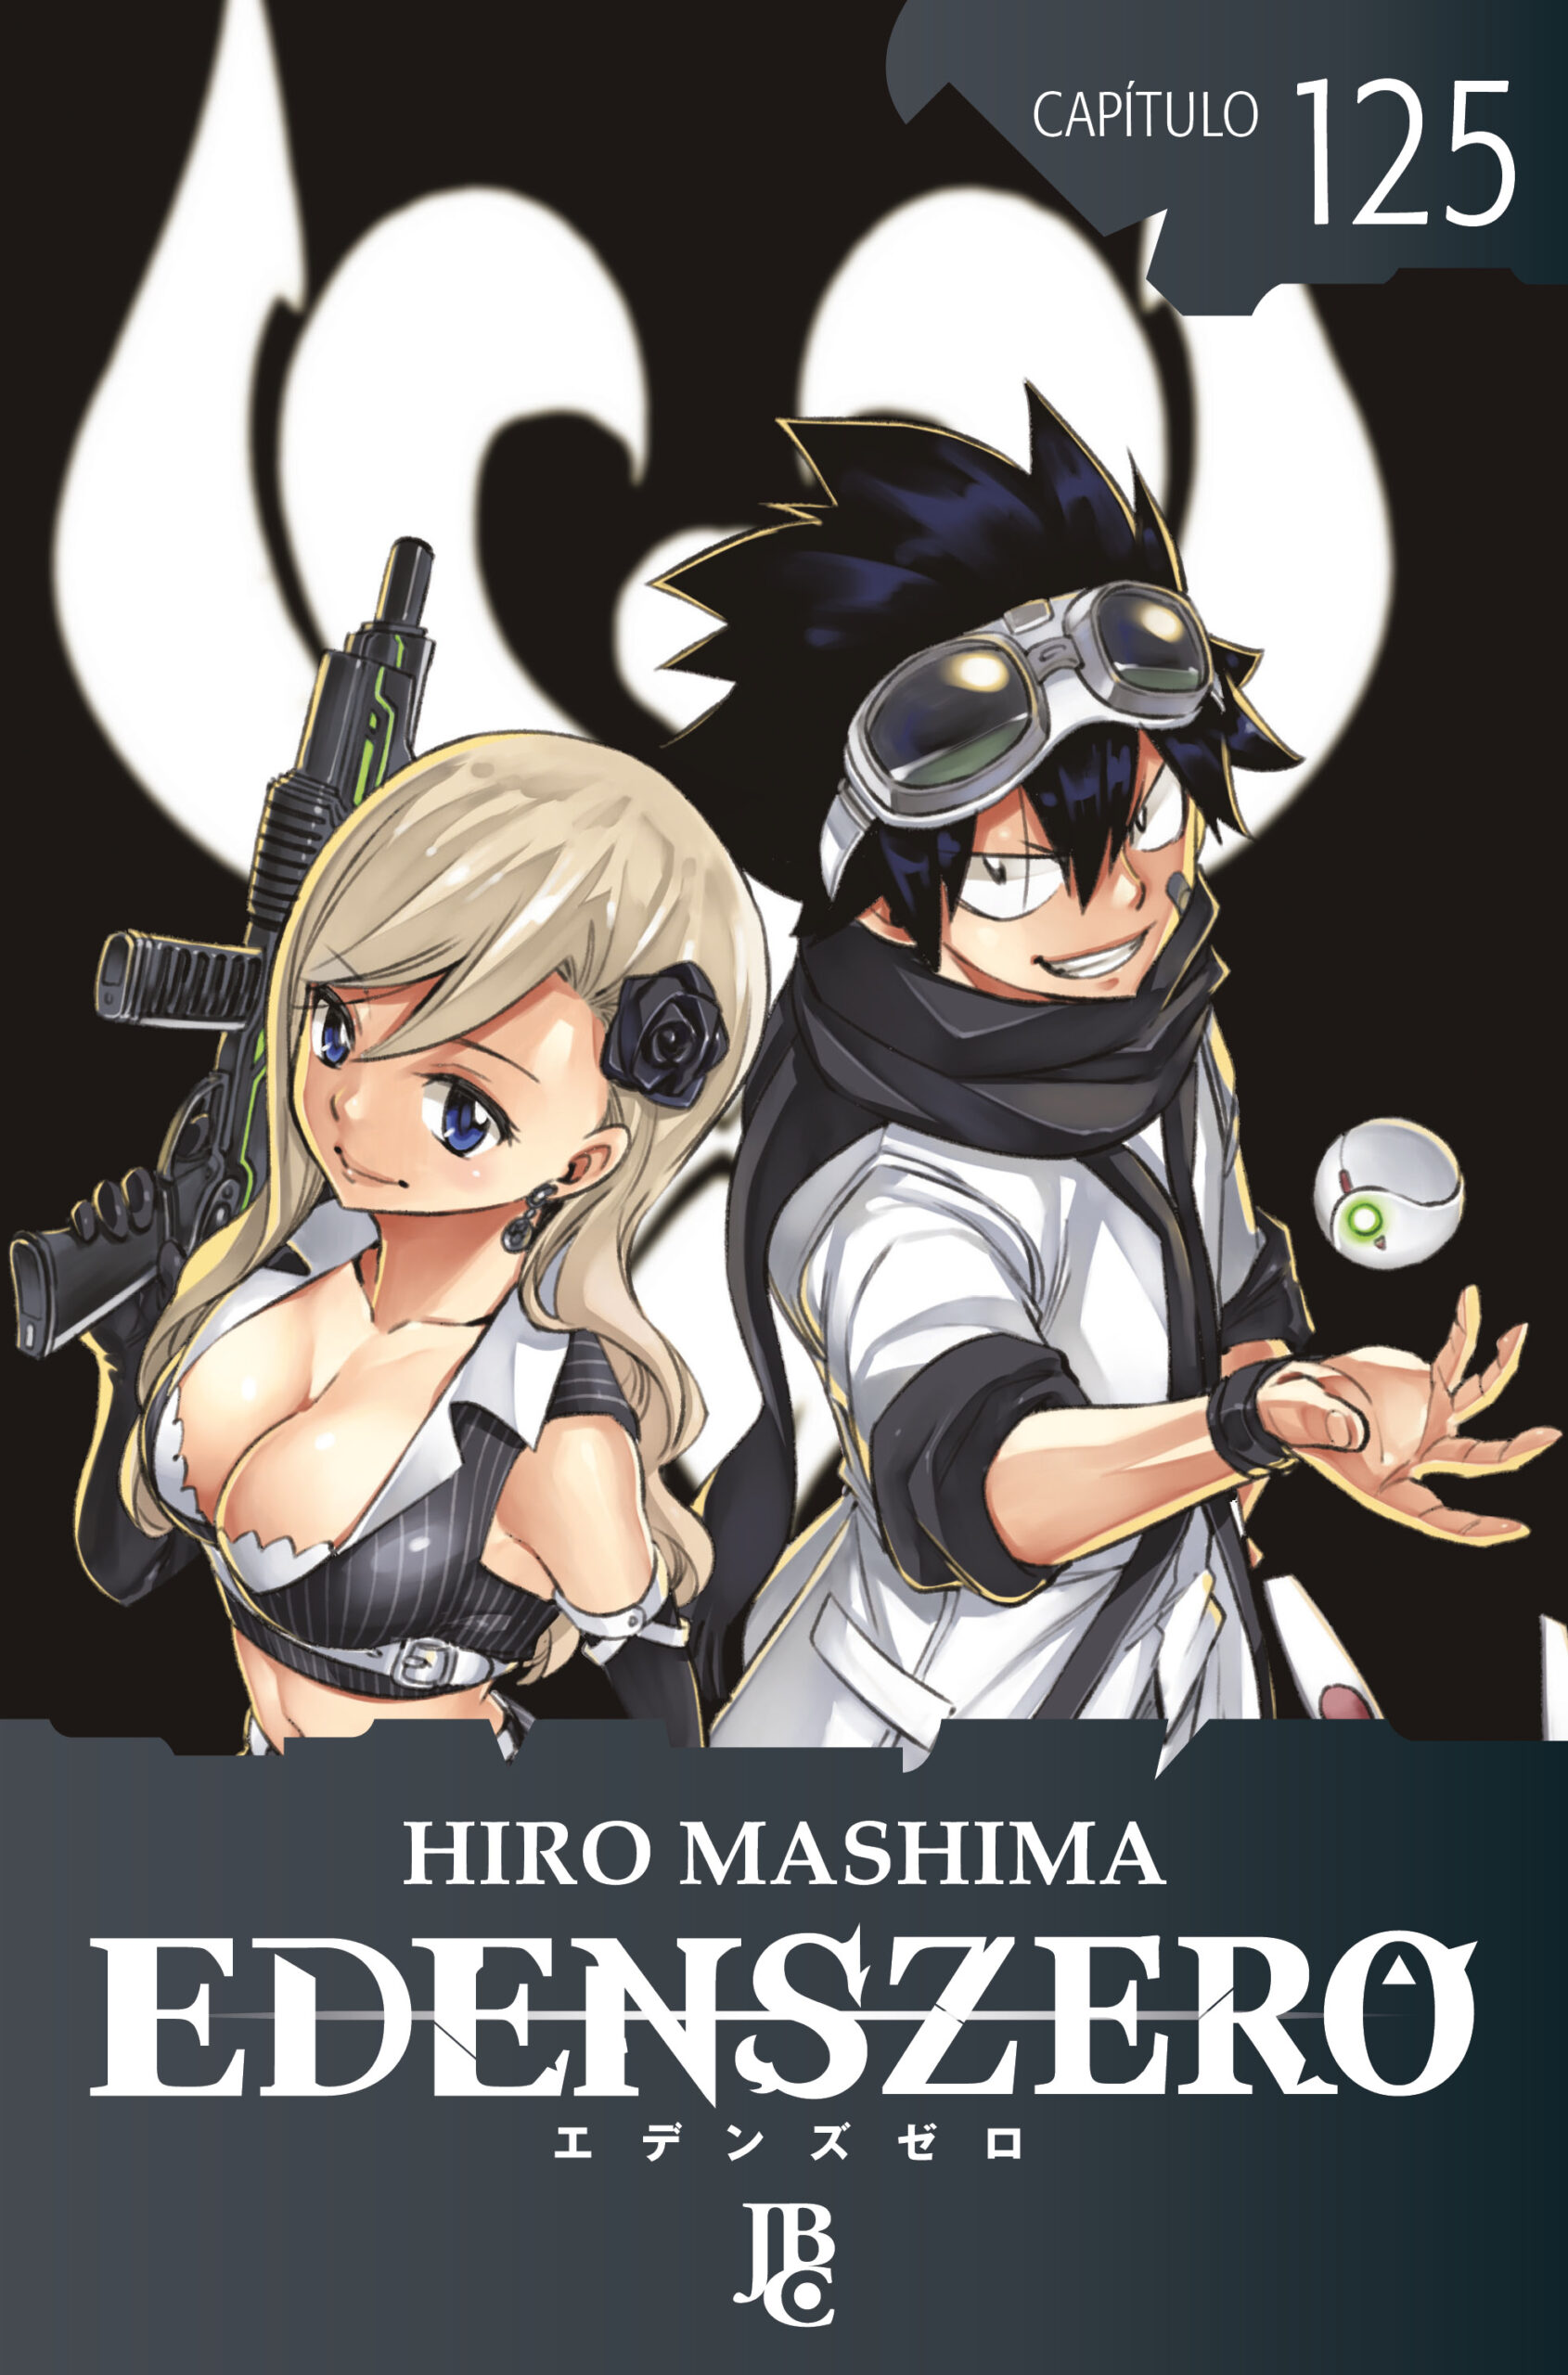 Edens Zero Capítulo 001 eBook : Mashima, Hiro: : Livros